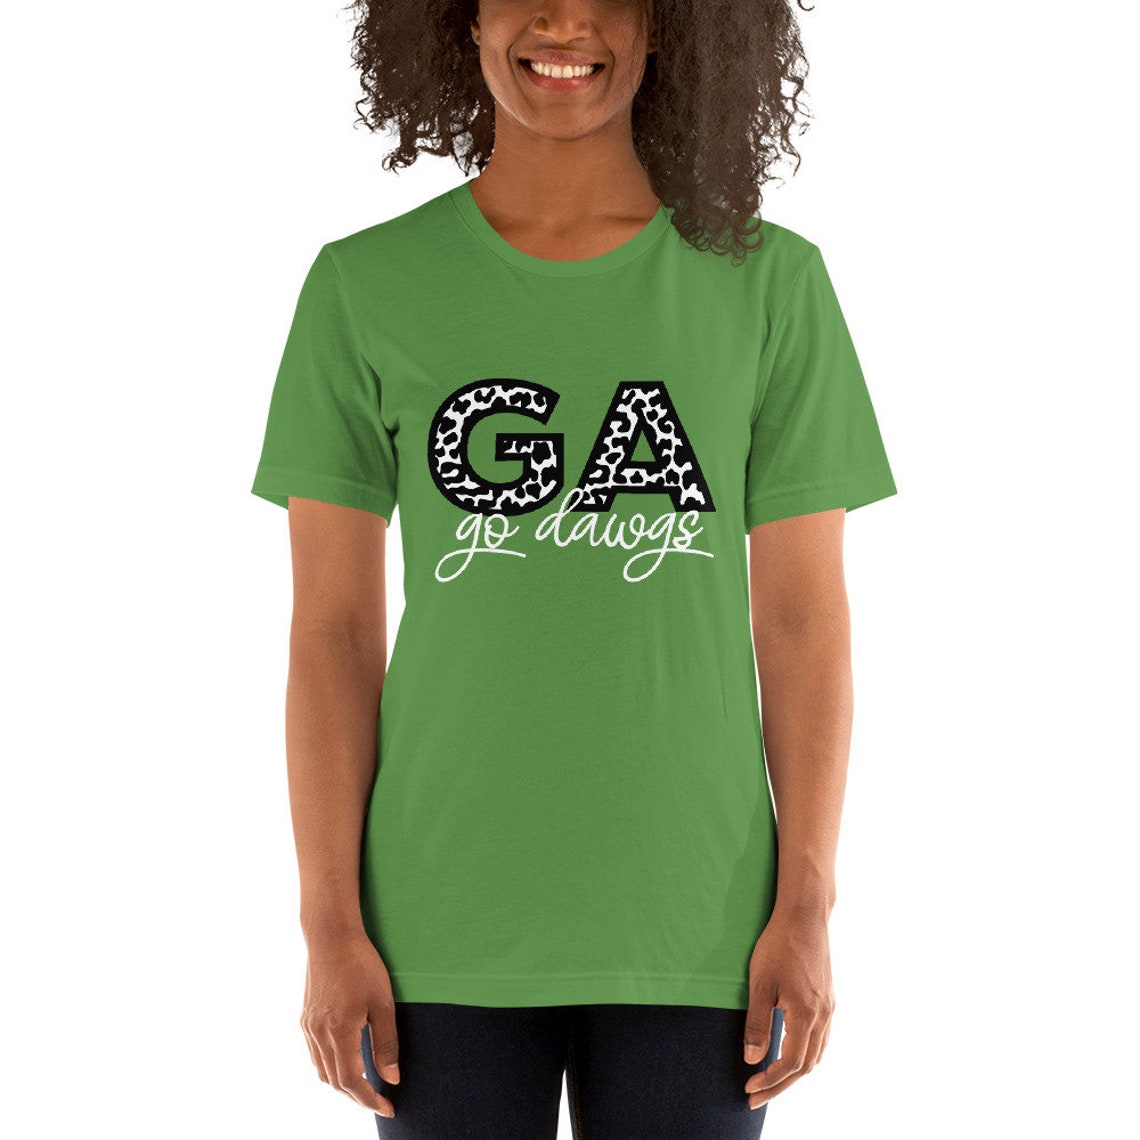 UGA Go Dawgs Short-Sleeve Unisex T-Shirt University of | Etsy